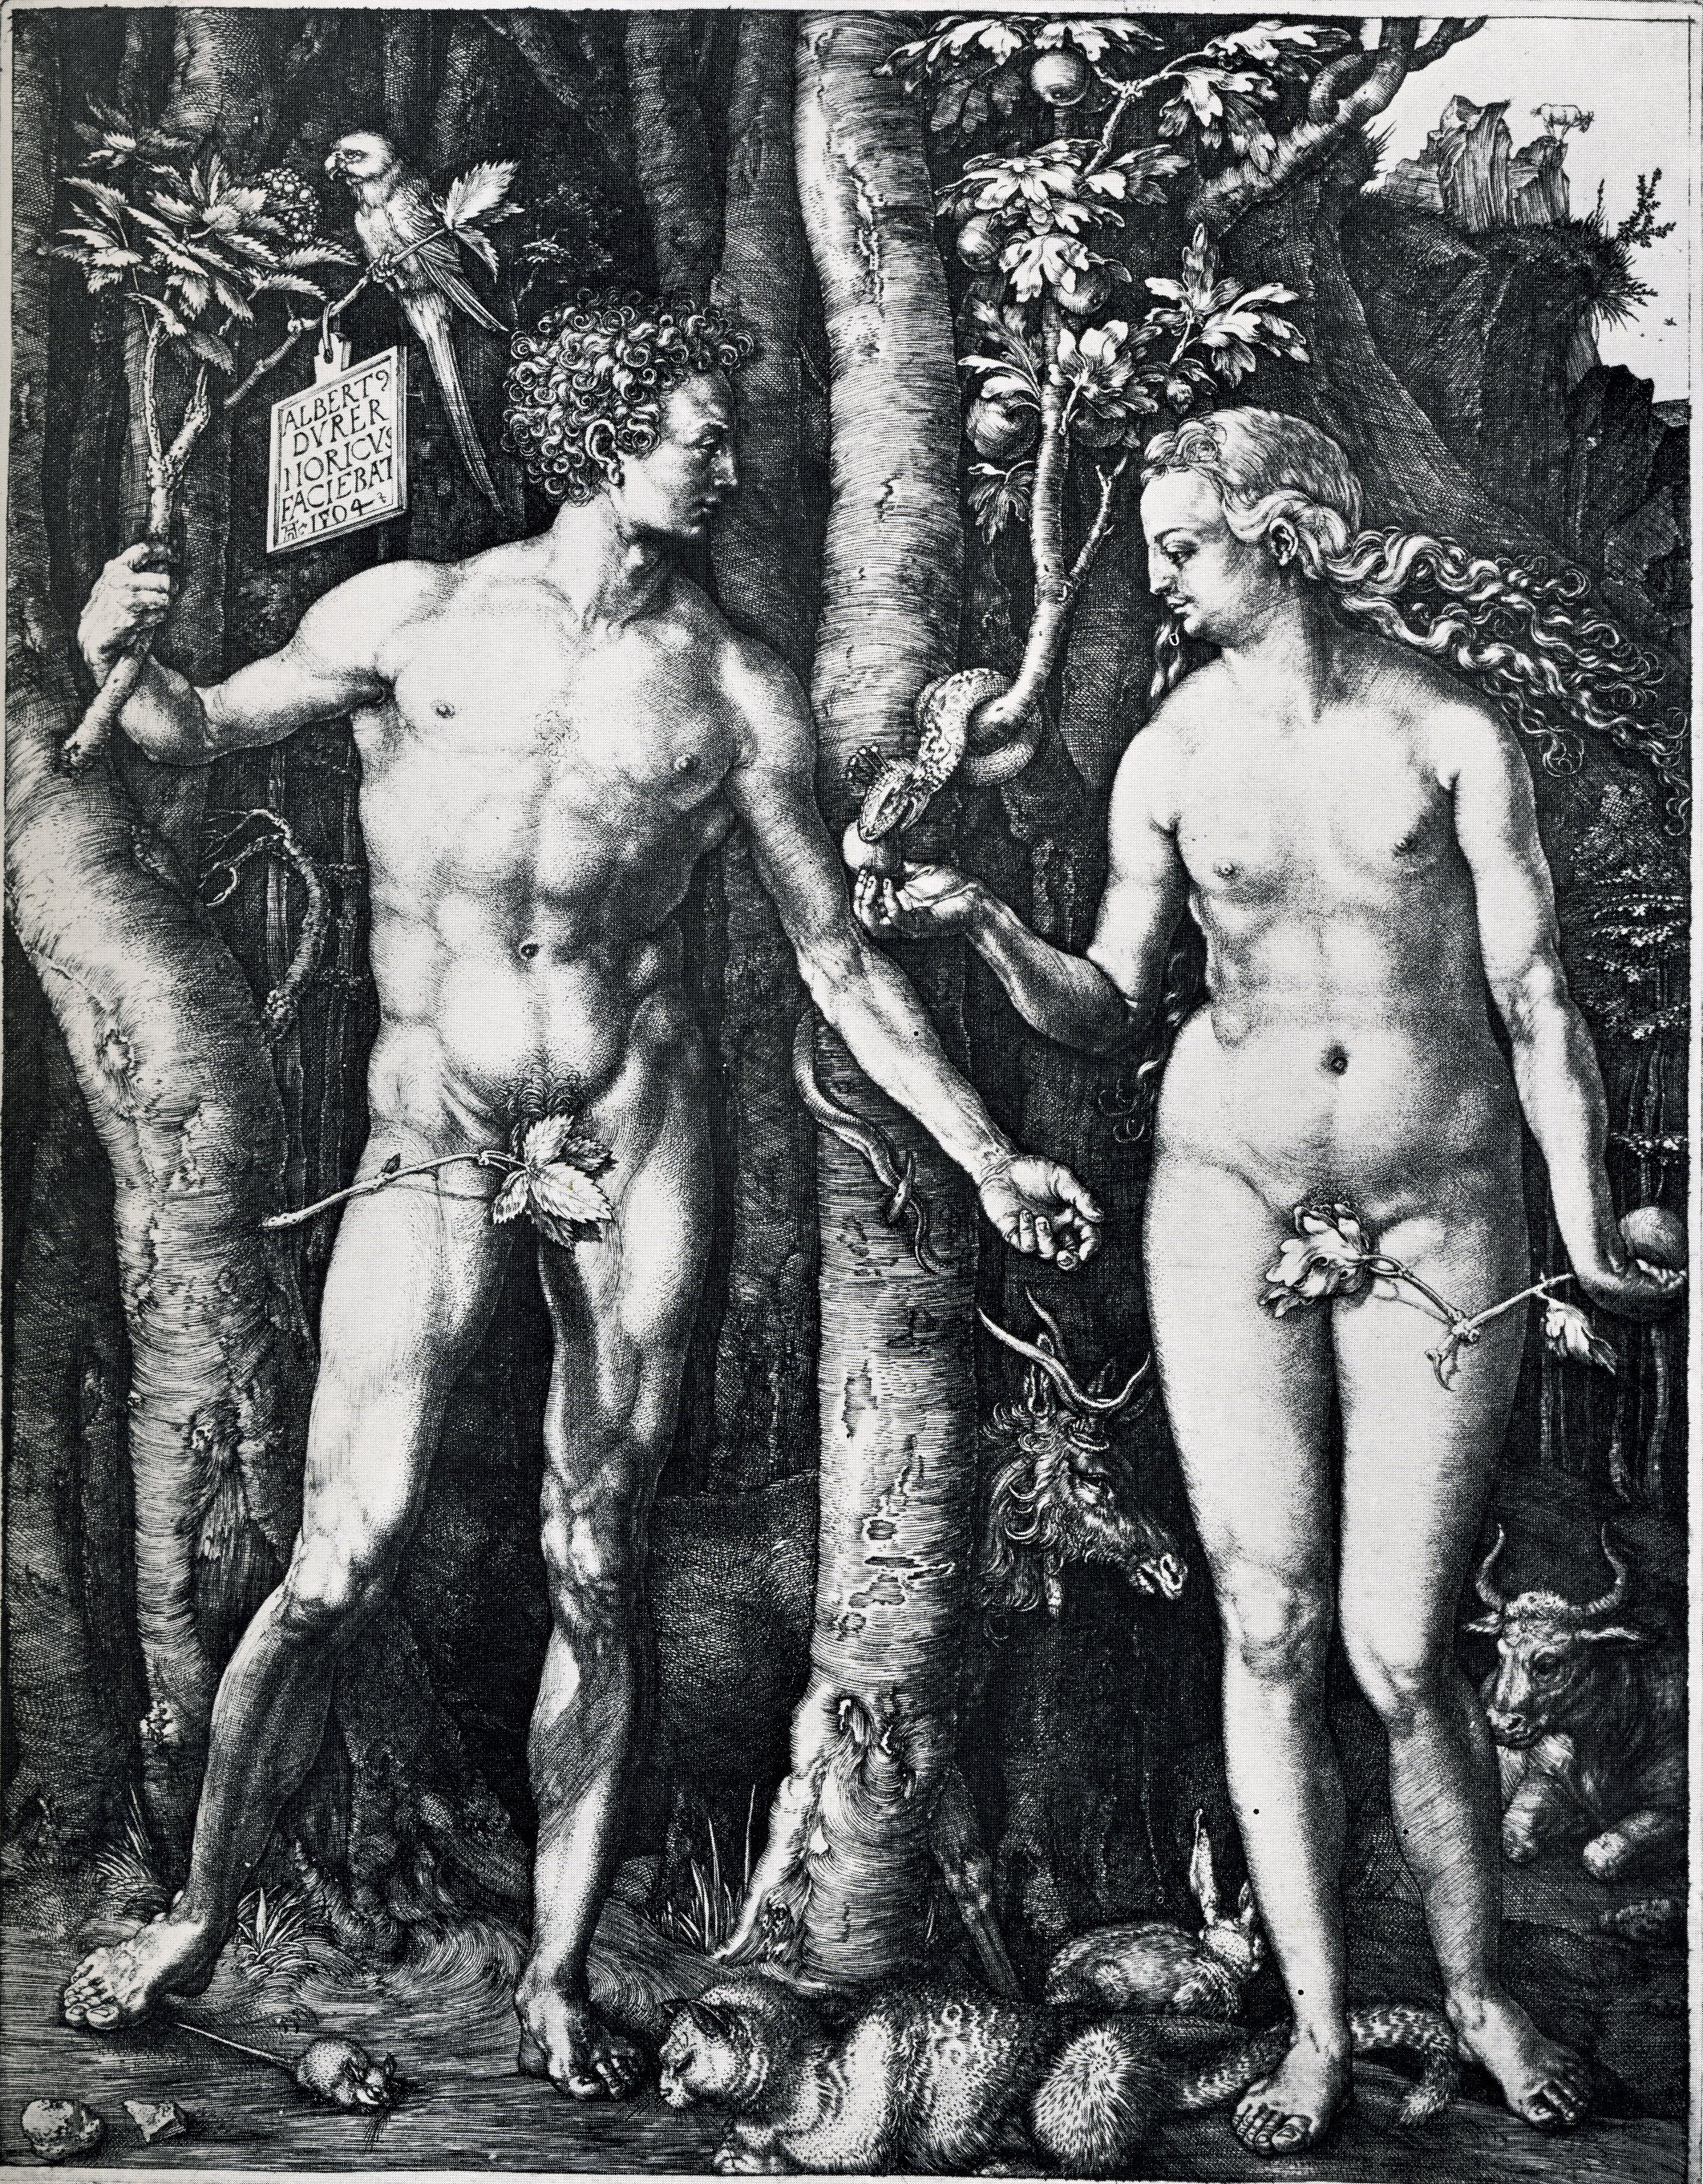 Albrecht Dürer, Adam and Eve, 1504, engraving (300 dpi image)